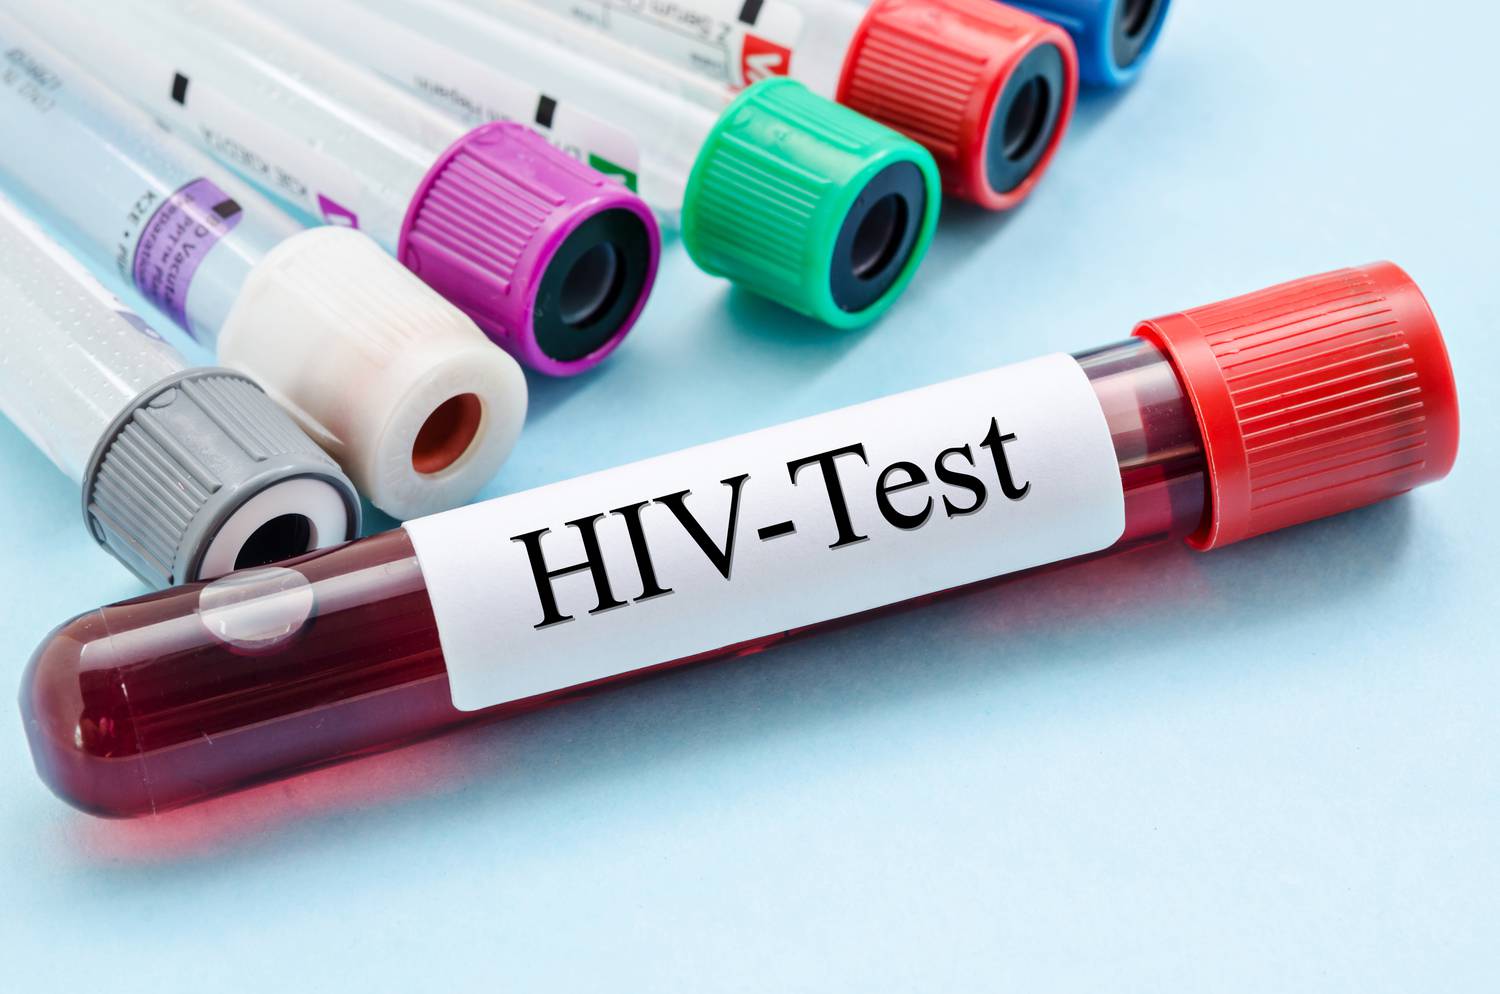 Hasmenés, köhögés, fekélyek: a HIV-fertőzés tünetei